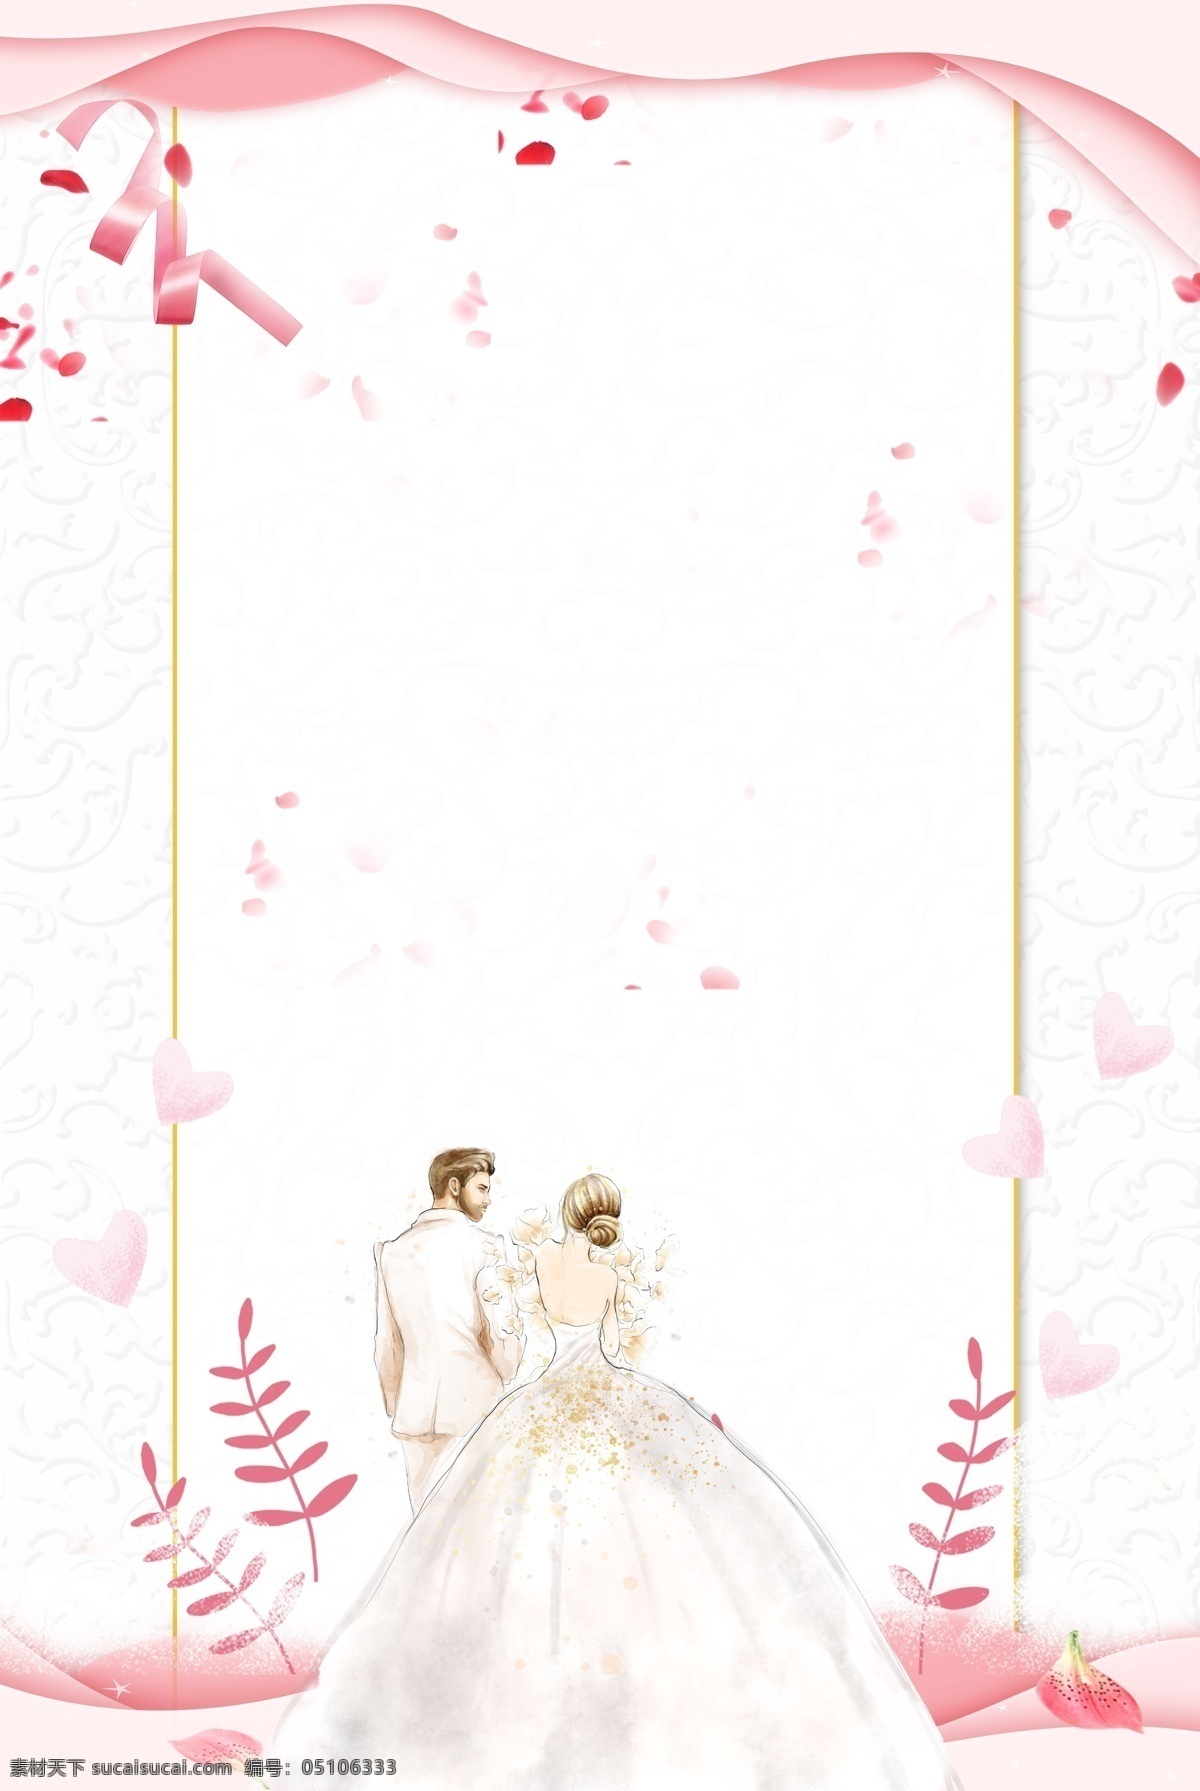 简约 520 情人节 结婚 海报 背景 新郎新娘 边框 底纹 爱心 唯美 浅色 叶子